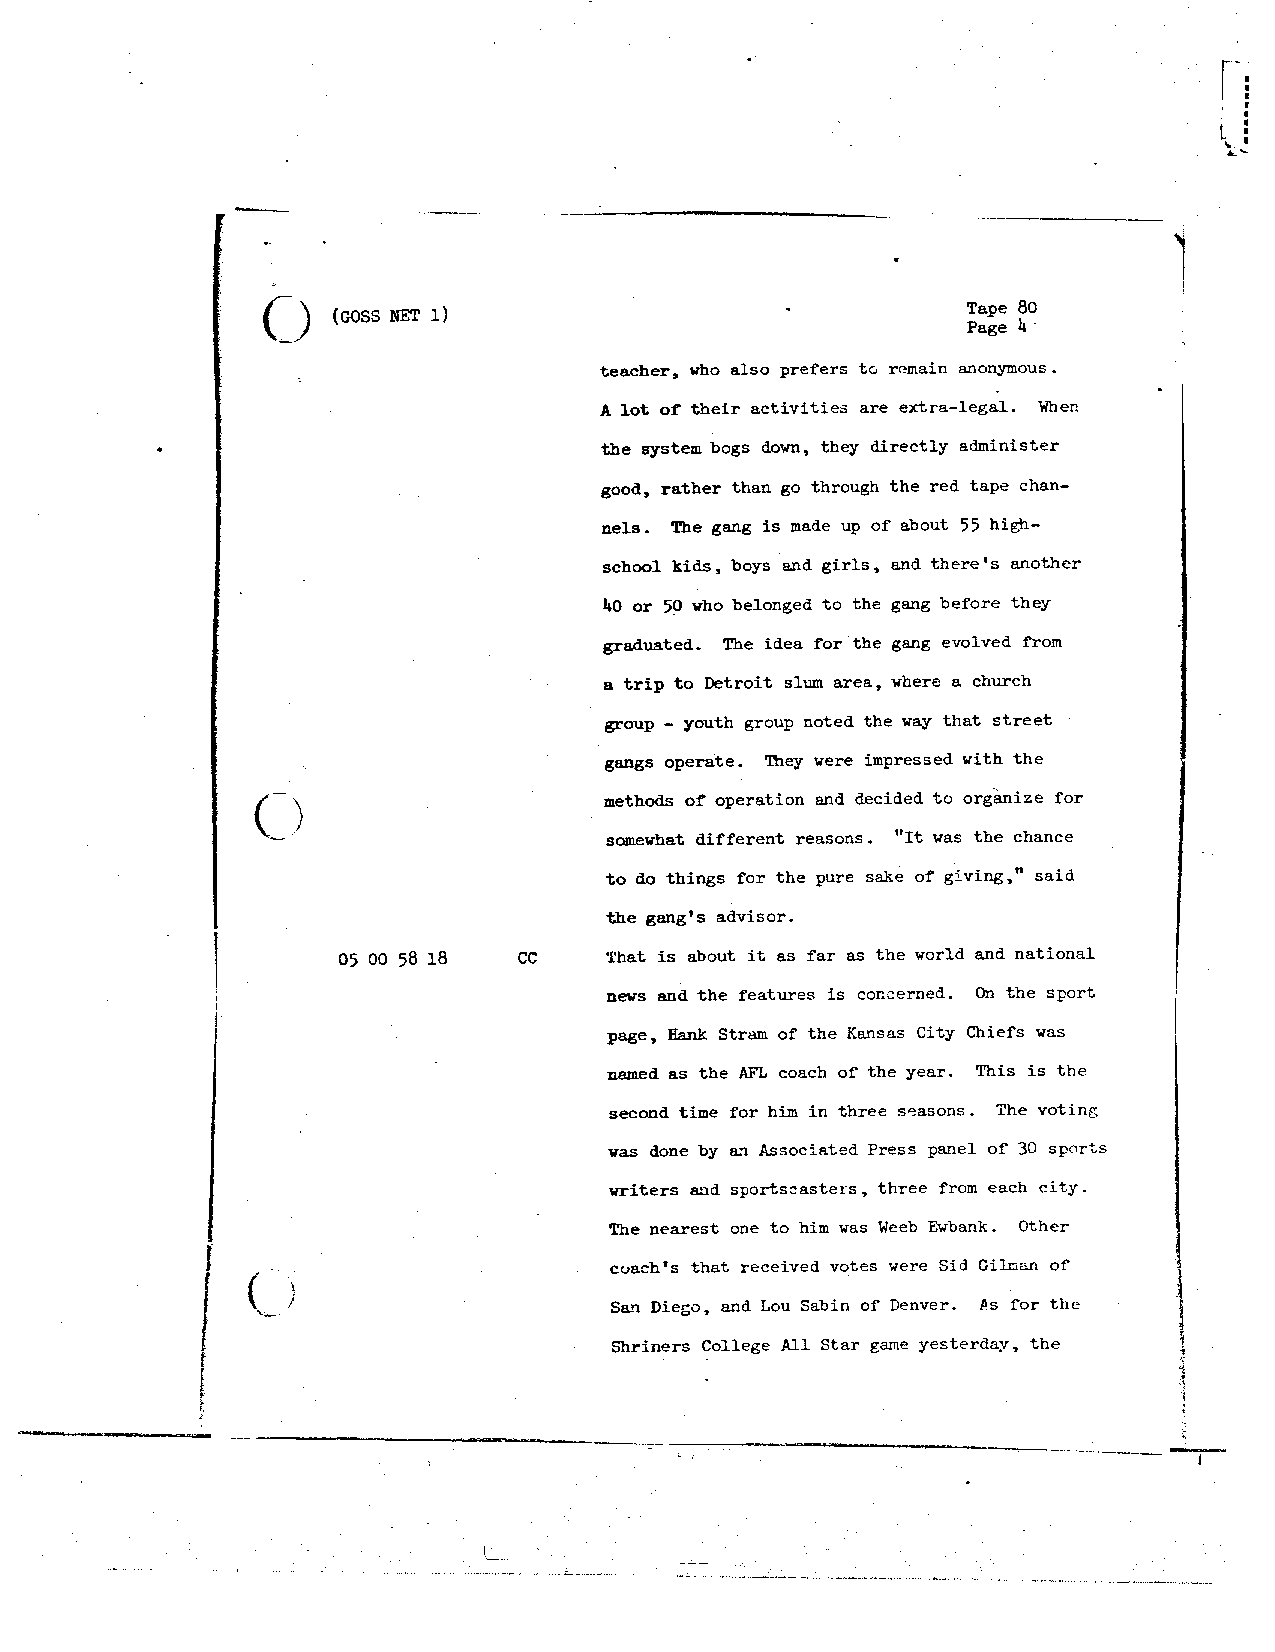 Page 661 of Apollo 8’s original transcript